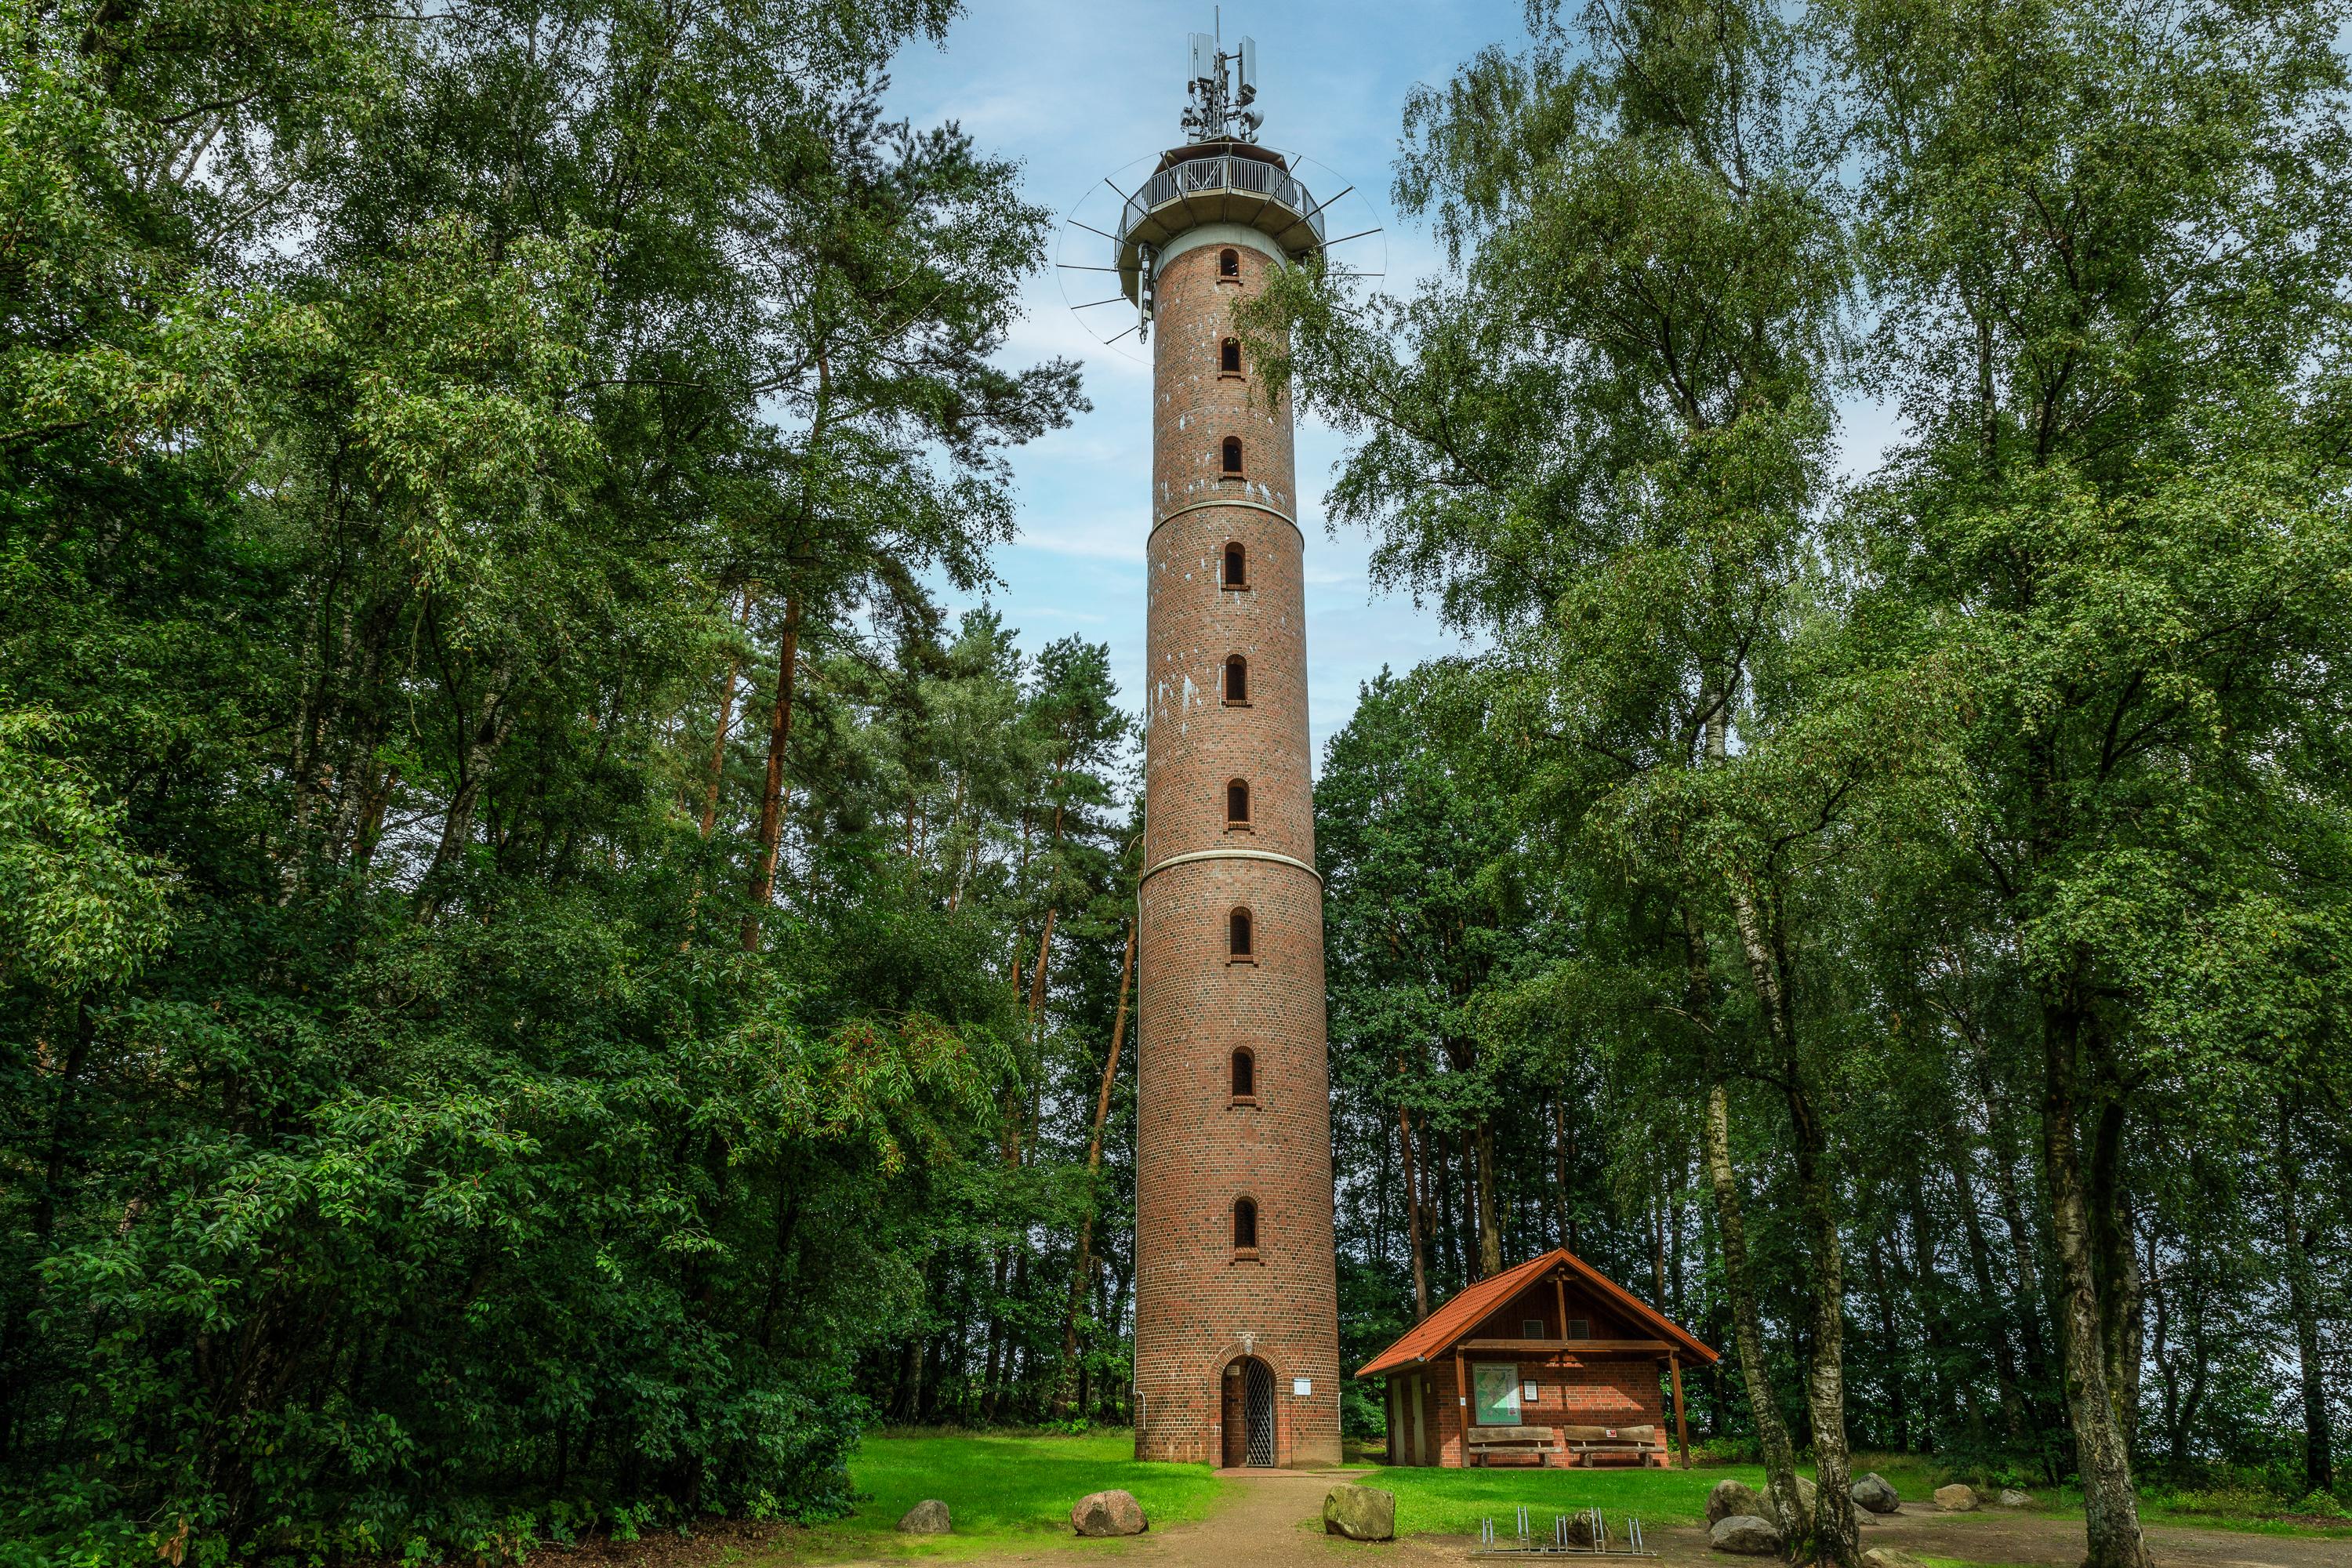 Hösseringen: observation tower near Hoesseringen